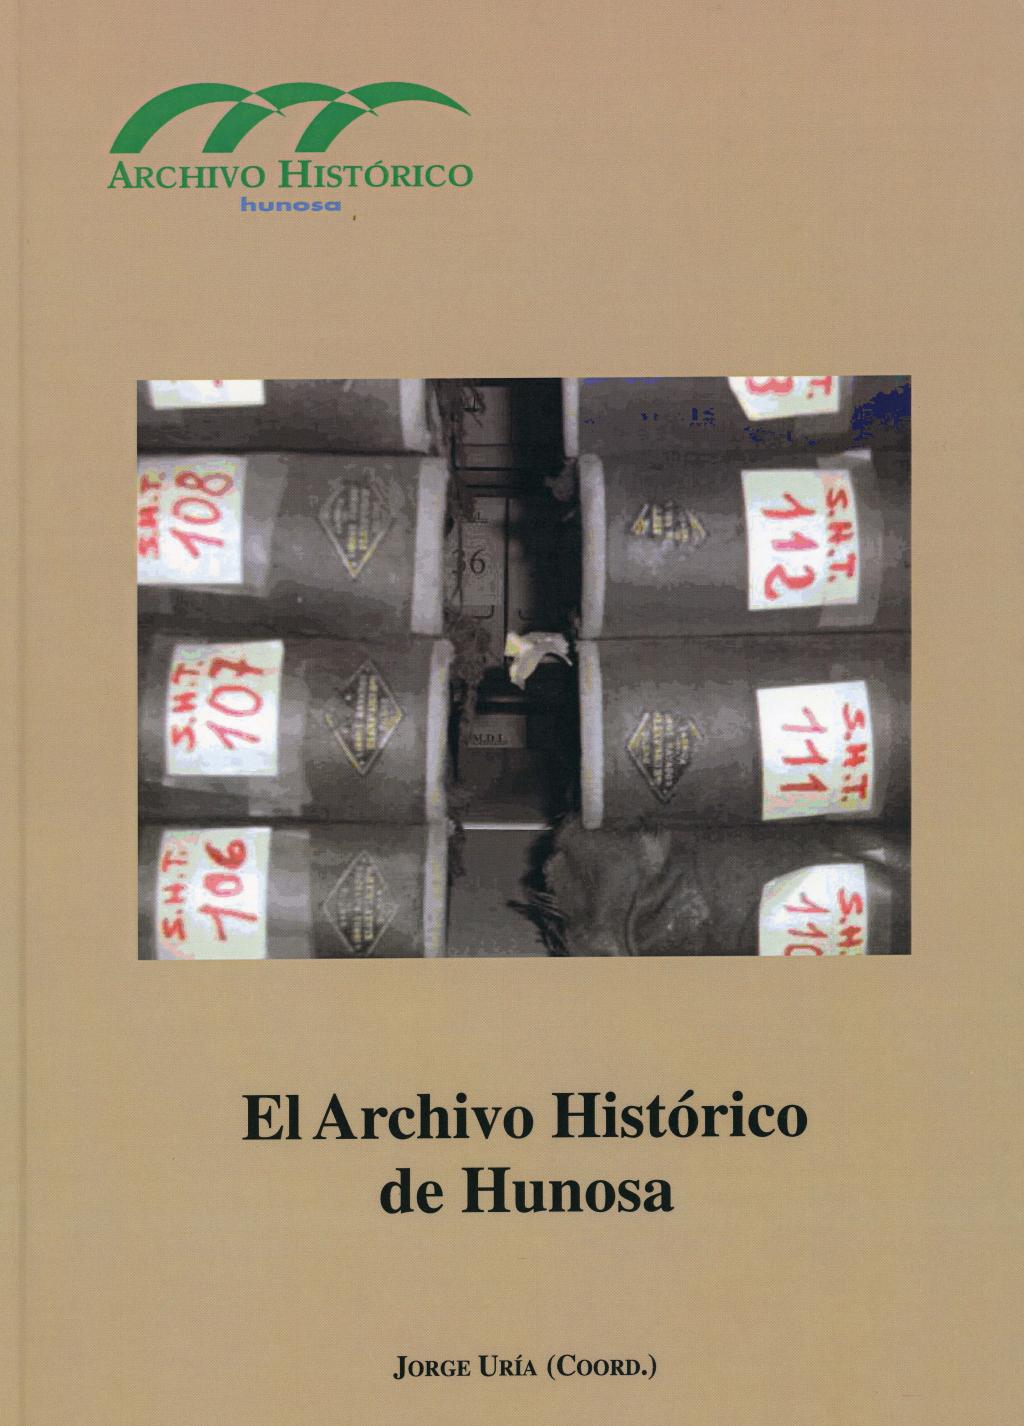 Libros El Archivo Histórico de Hunosa Pozo Fondón